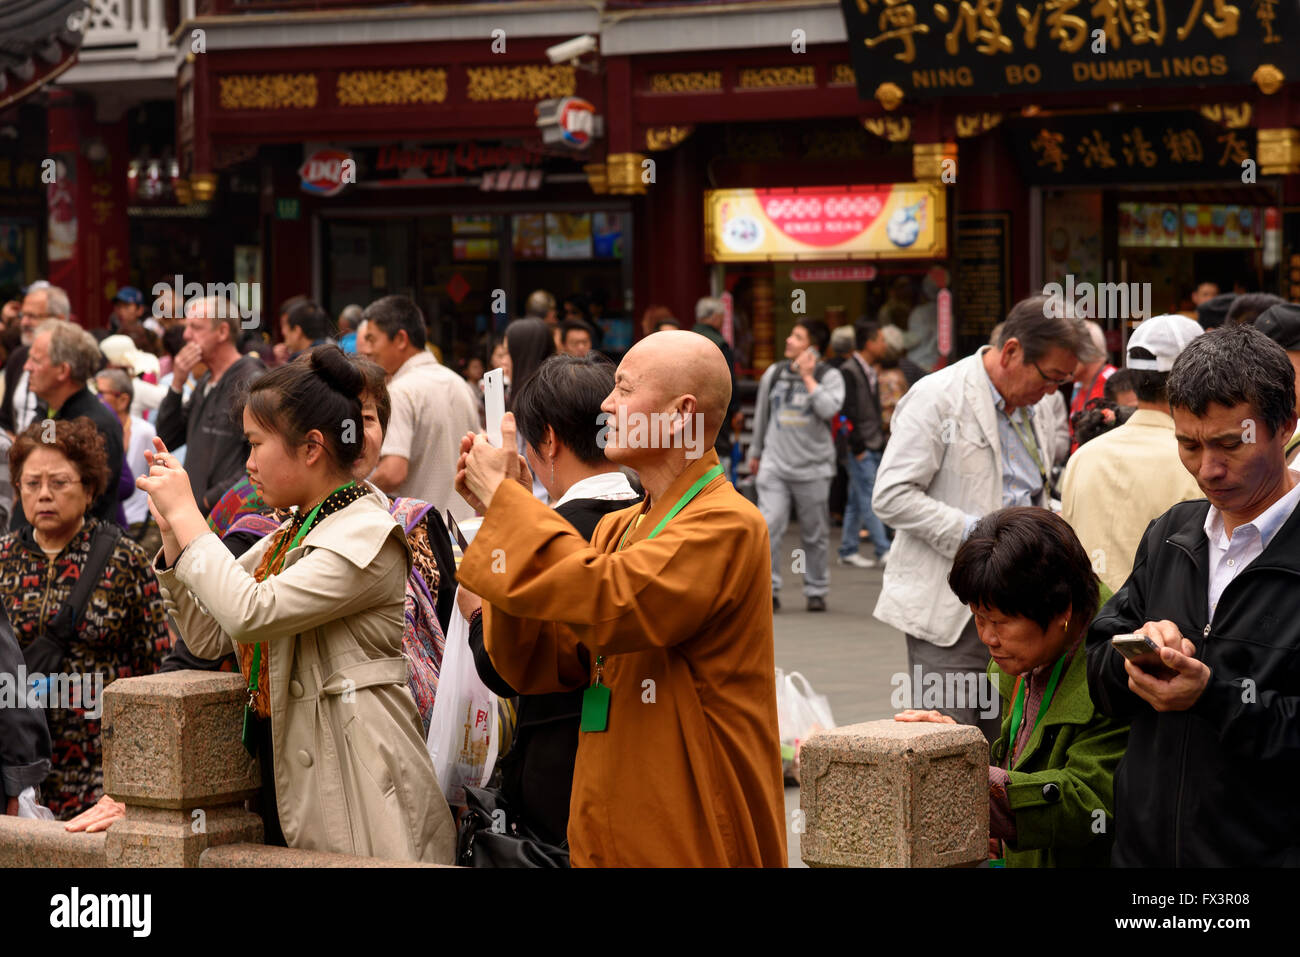 ein Mönch gekleidet in orangefarbenen Gewändern unter Menschenmenge, Fotos Sehenswürdigkeiten auf Handy Stockfoto